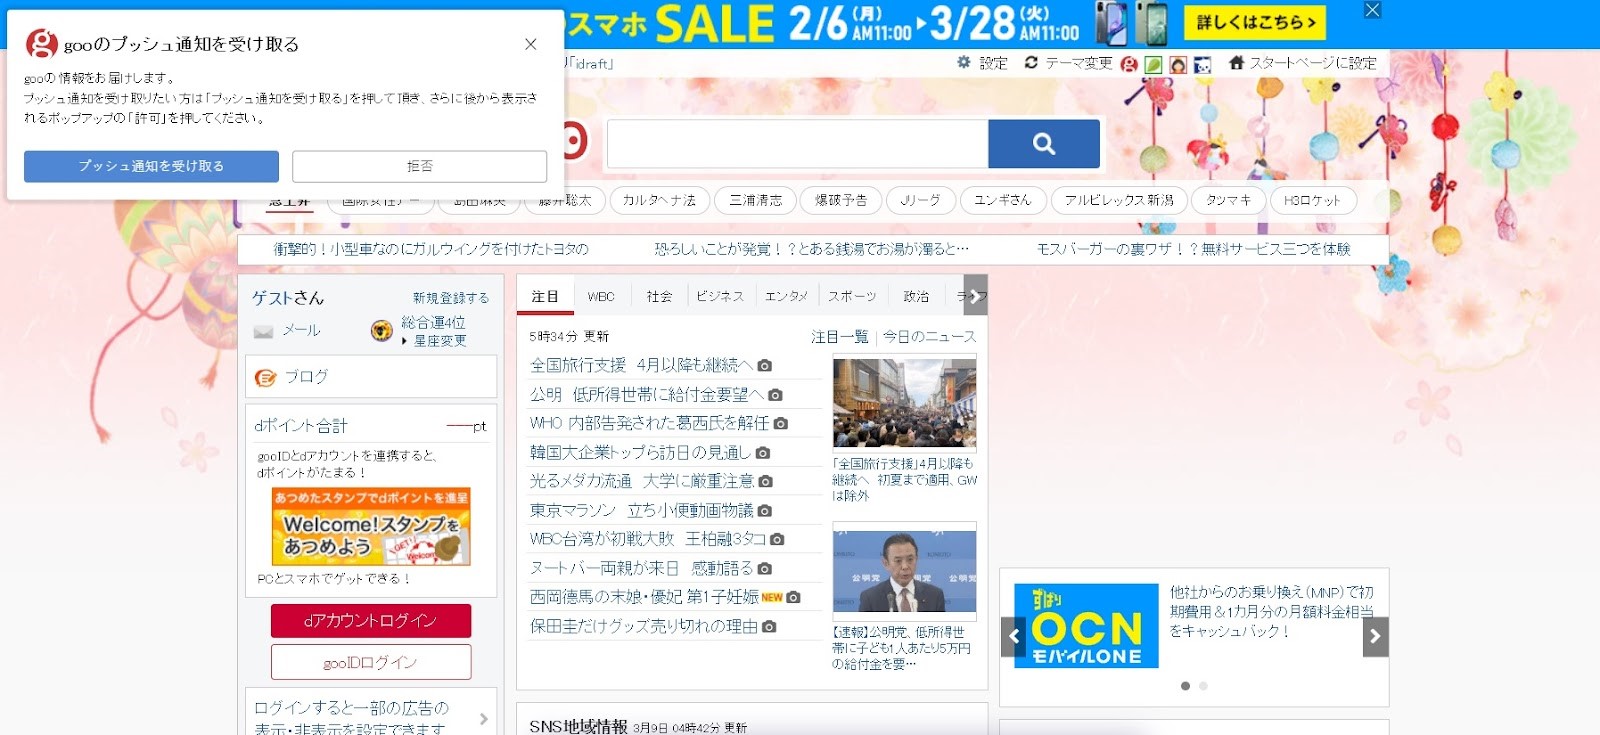 Goo - японская независимая поисковая система